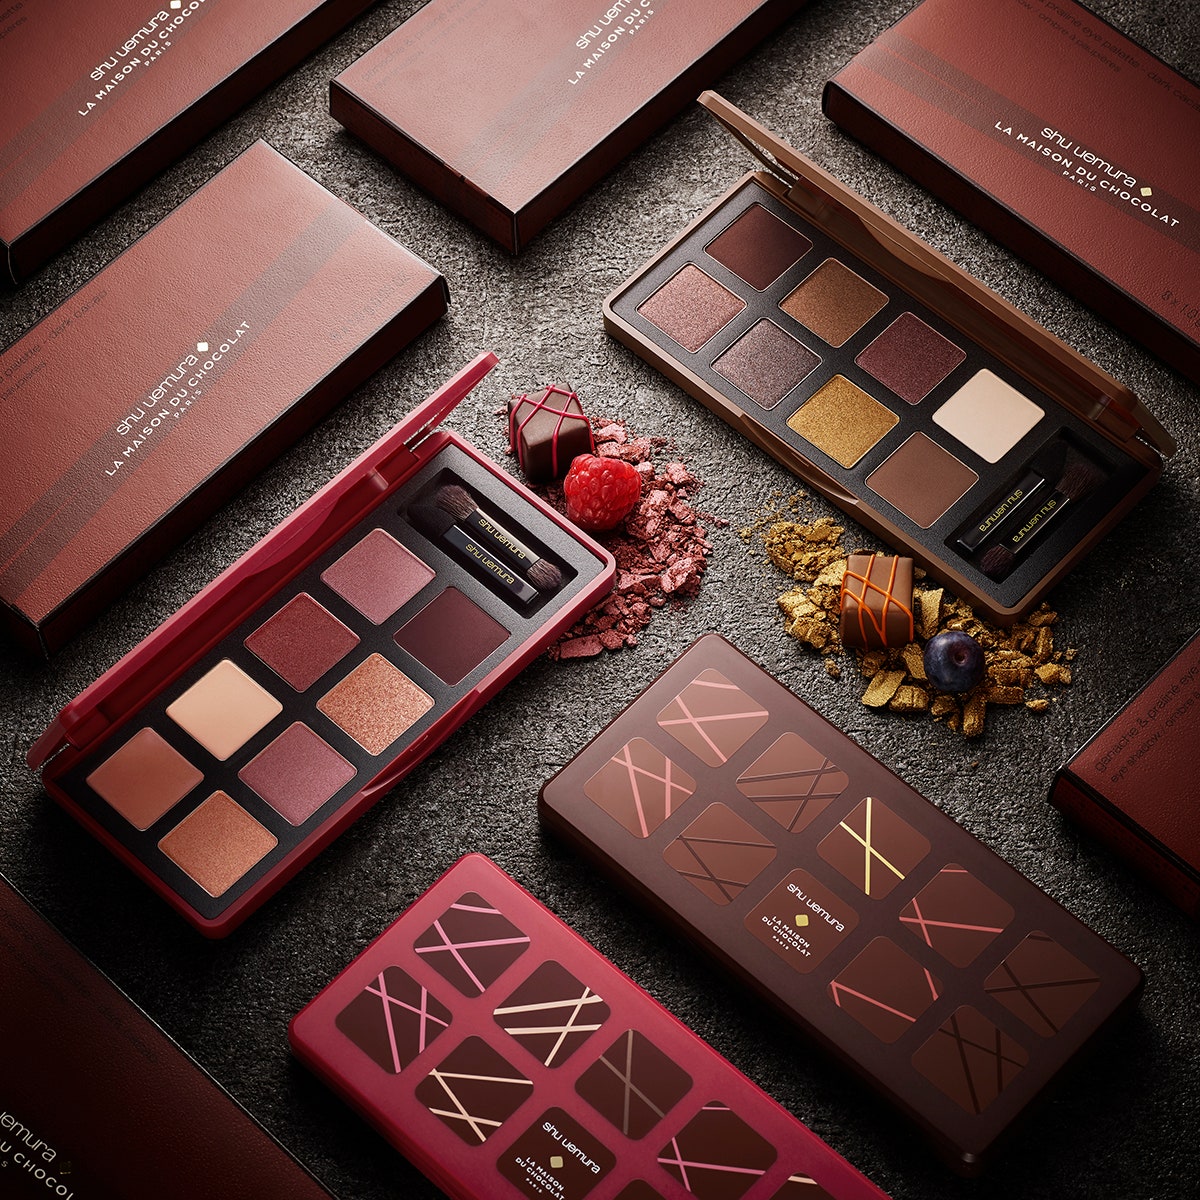 Модный макияж 2018 фото коллекции Shu Uemura и La Maison du Chocolat